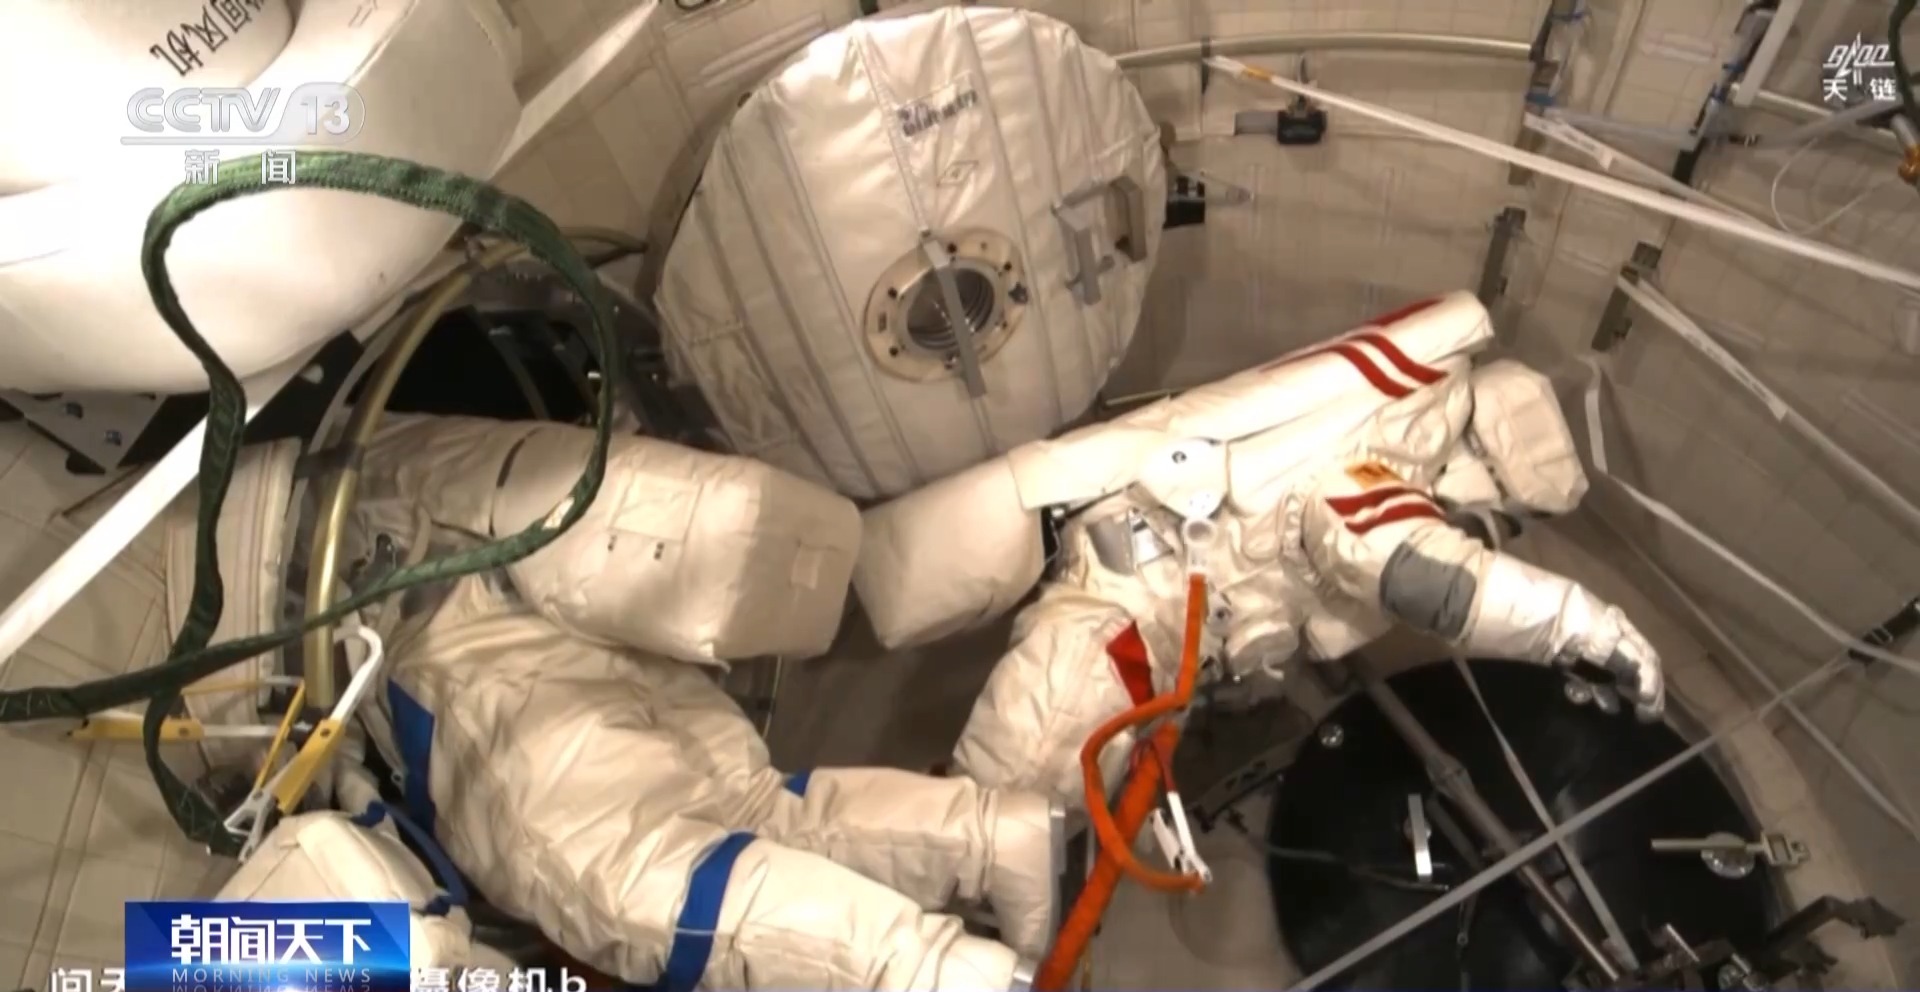 首次空间站舱外试验性维修作业！第一视角看神十七航天员乘组出舱